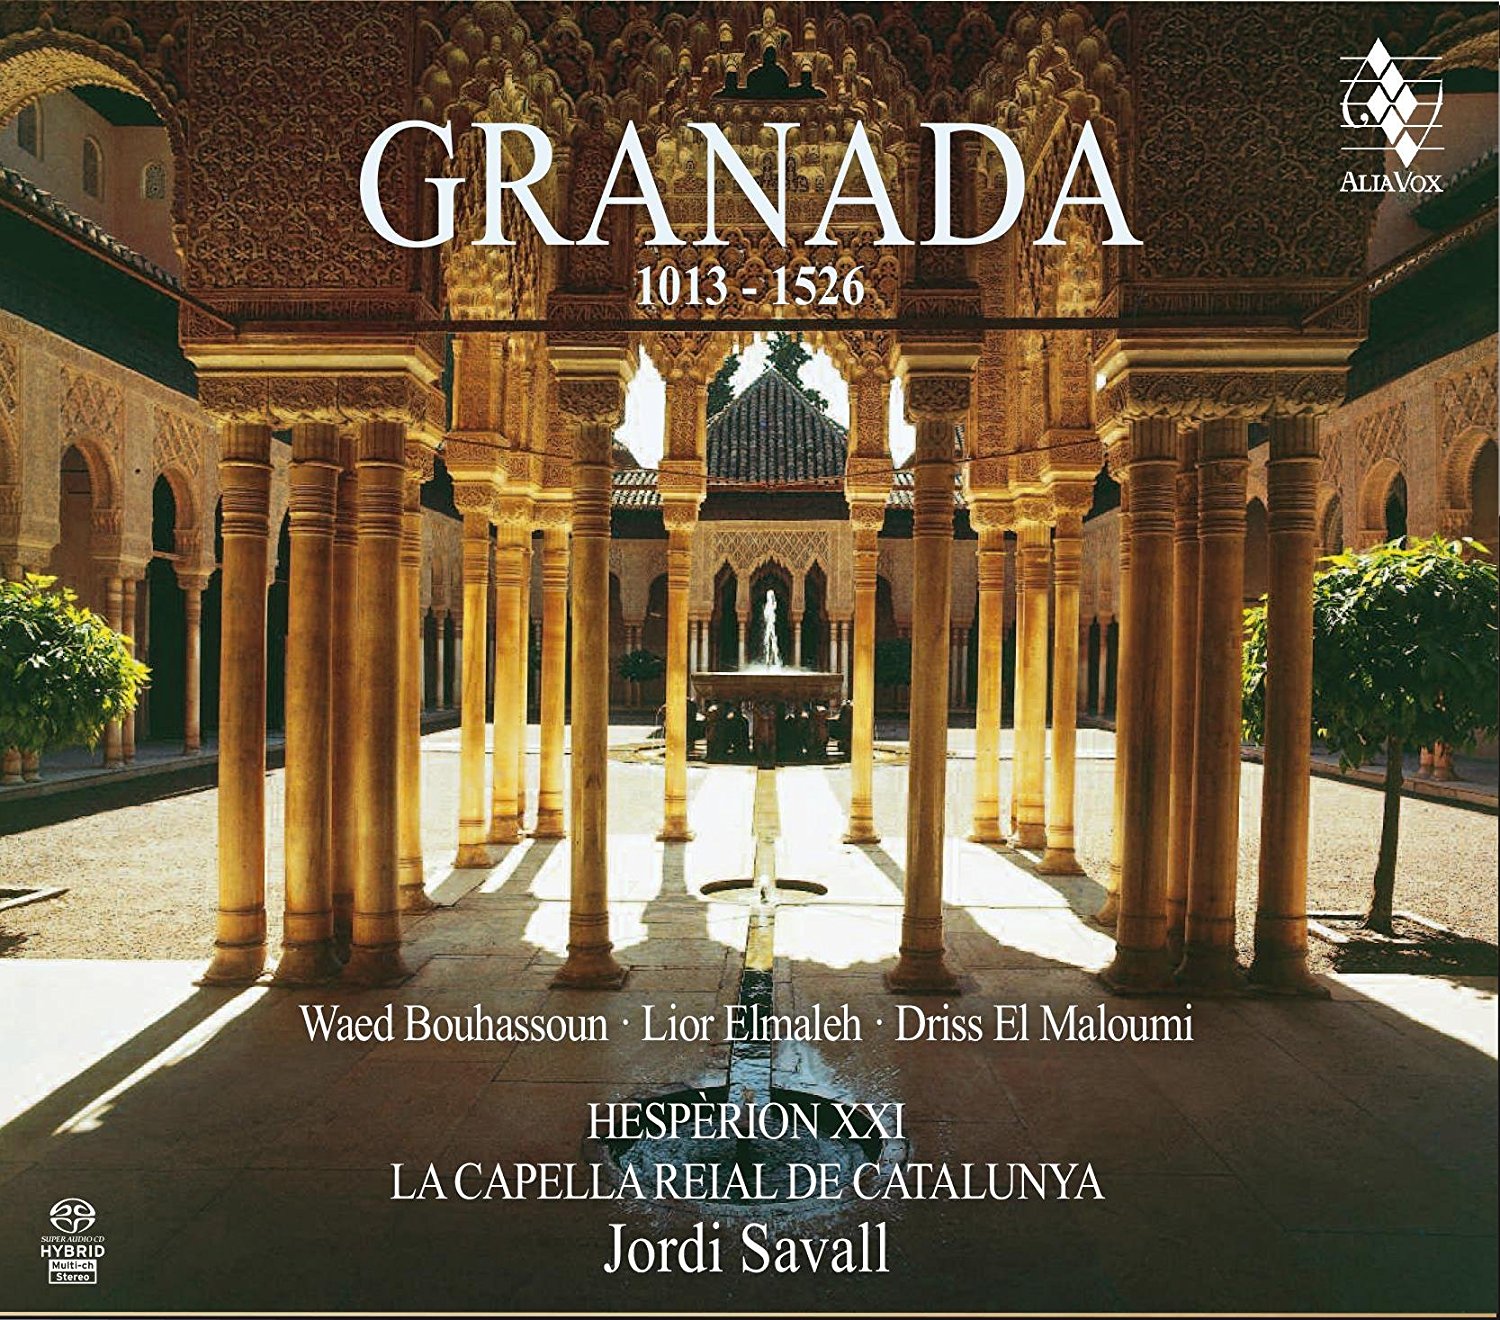 Granada 1013-1502 | Hesperion XXI, La Capella Reial de Catalunya